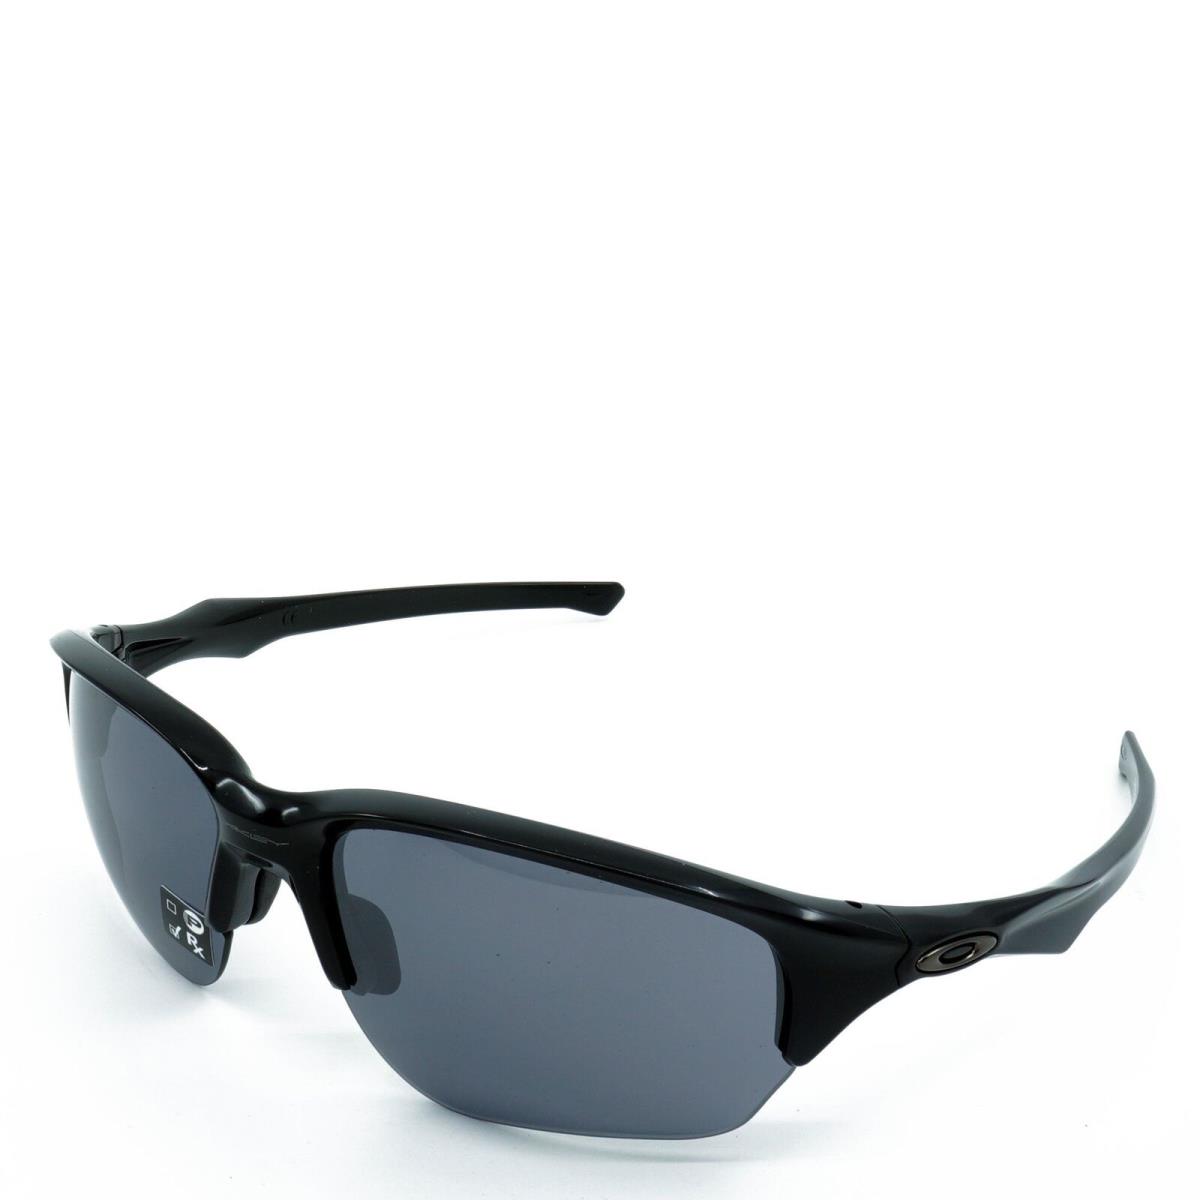 OO9363-02 Mens Oakley Flak Beta Sunglasses